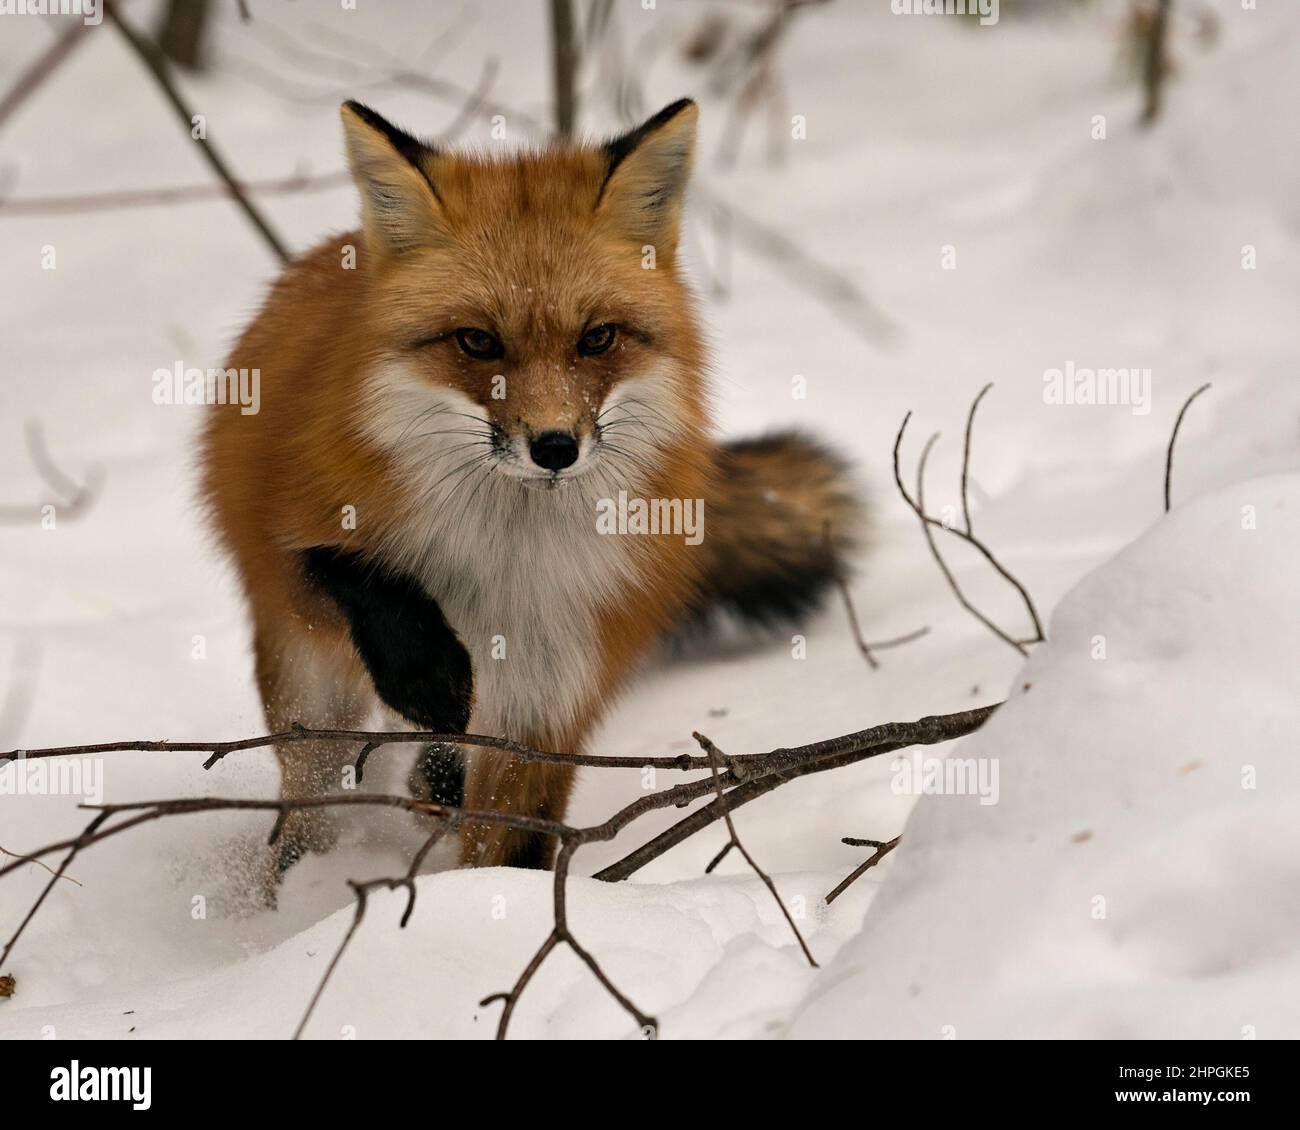 Profil du renard roux en gros plan en hiver dans son environnement et son habitat avec fond de neige et queue de renard broussaillée, fourrure. Fox image. Banque D'Images